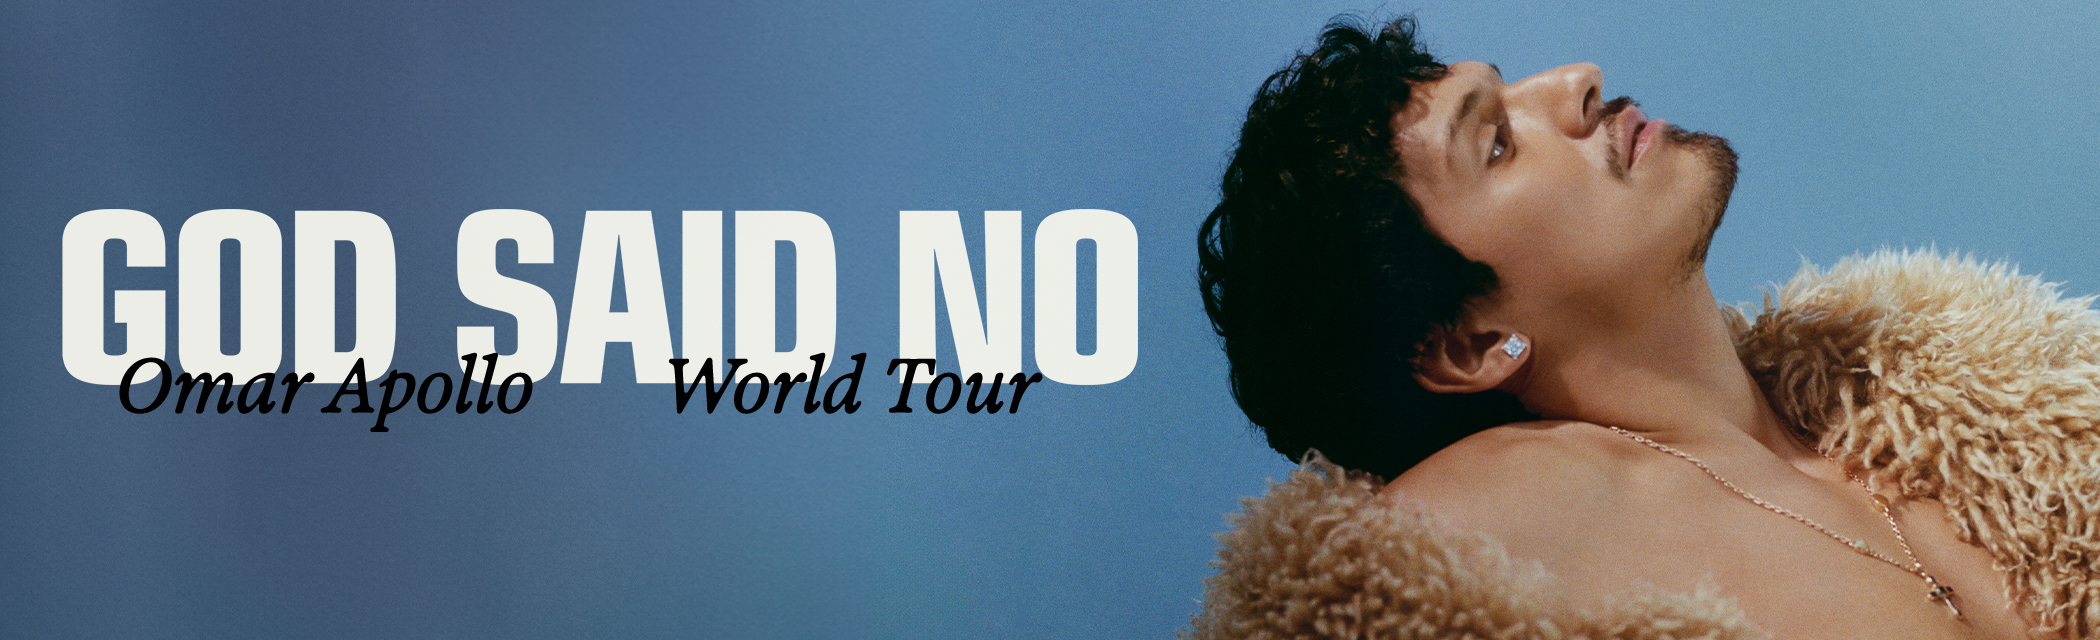 God Said No Tour